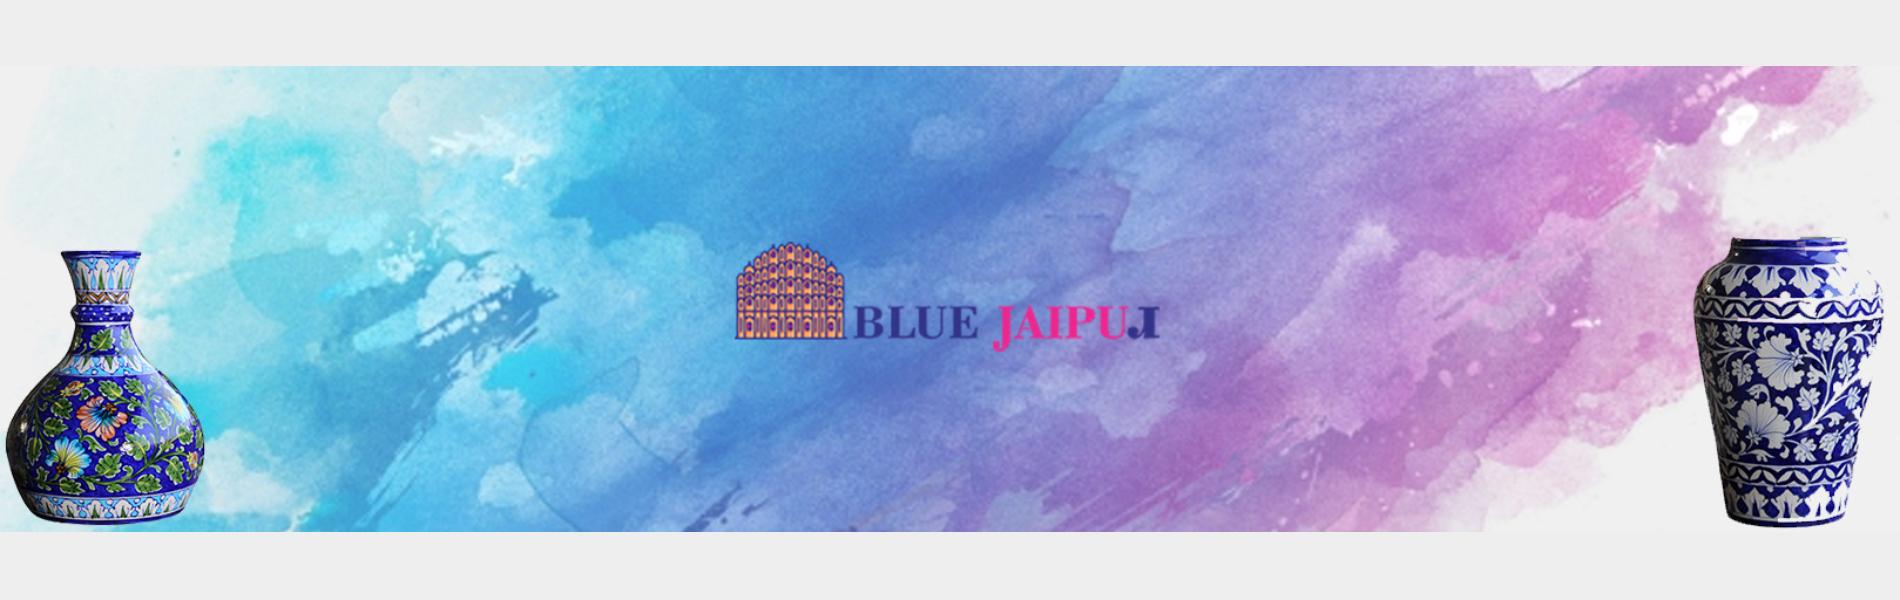 Blue Jaipur